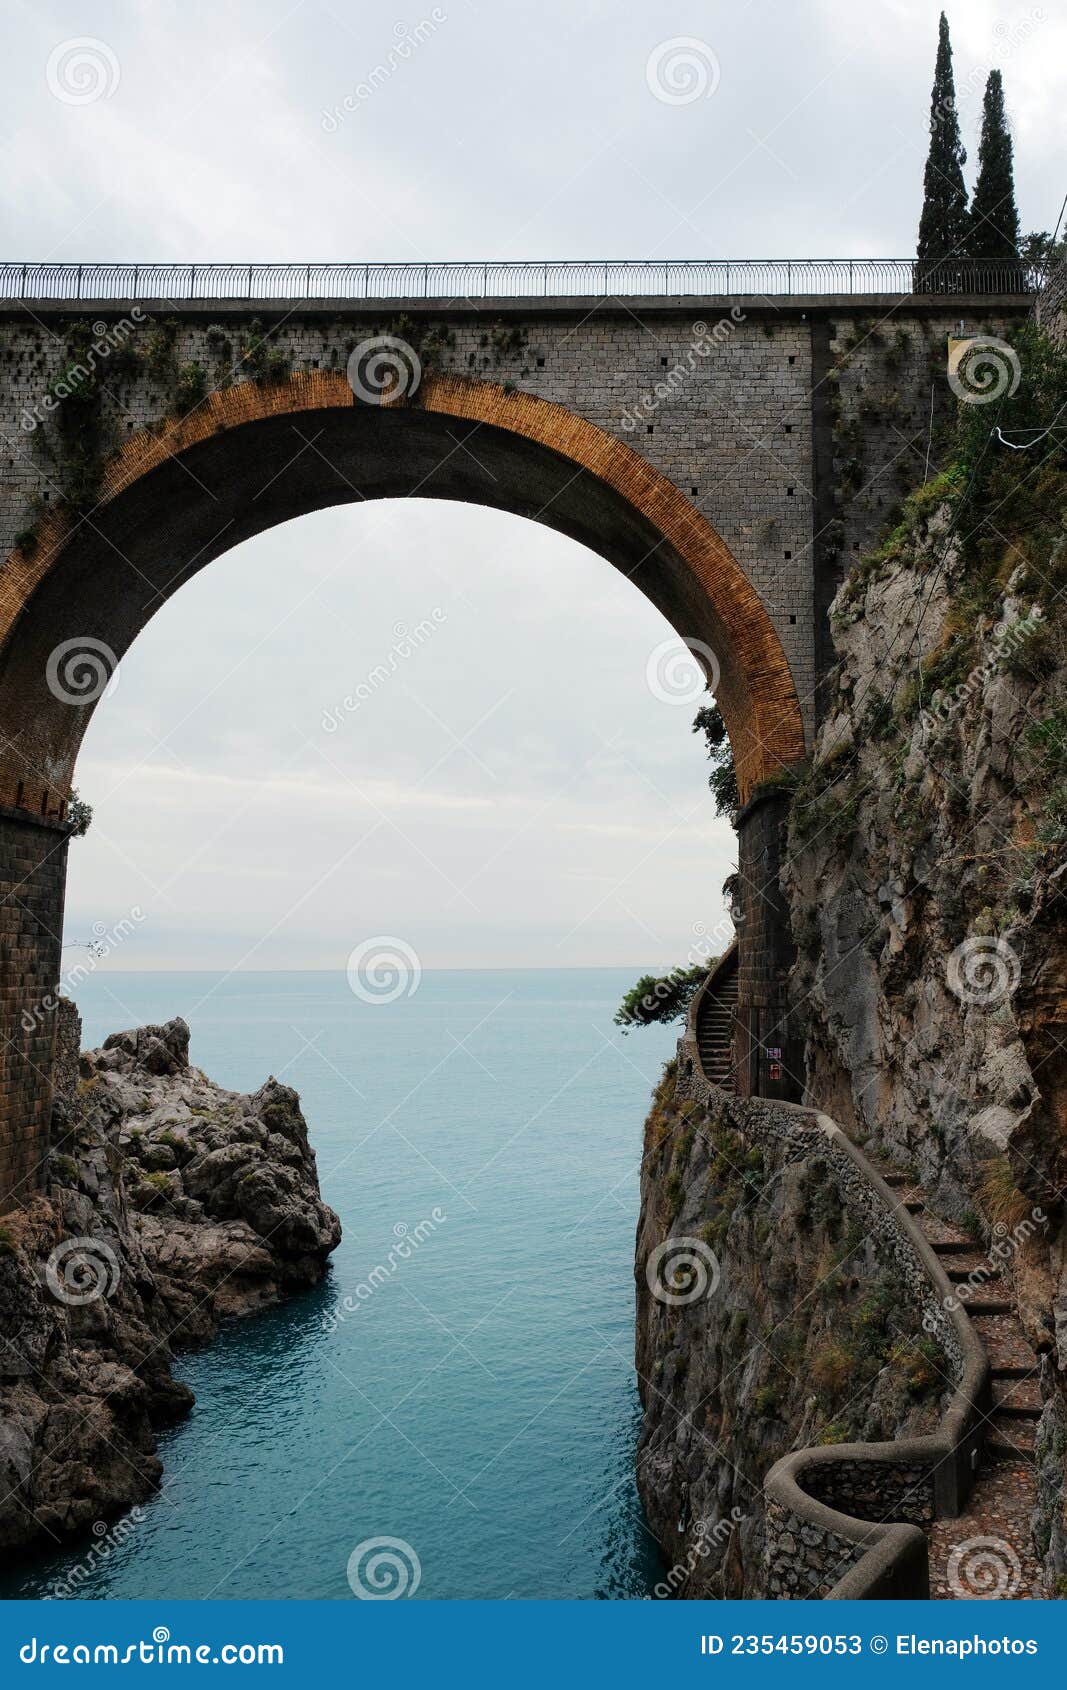 fiordo di furore bridge and mediterranean sea on amalfi coast, italy